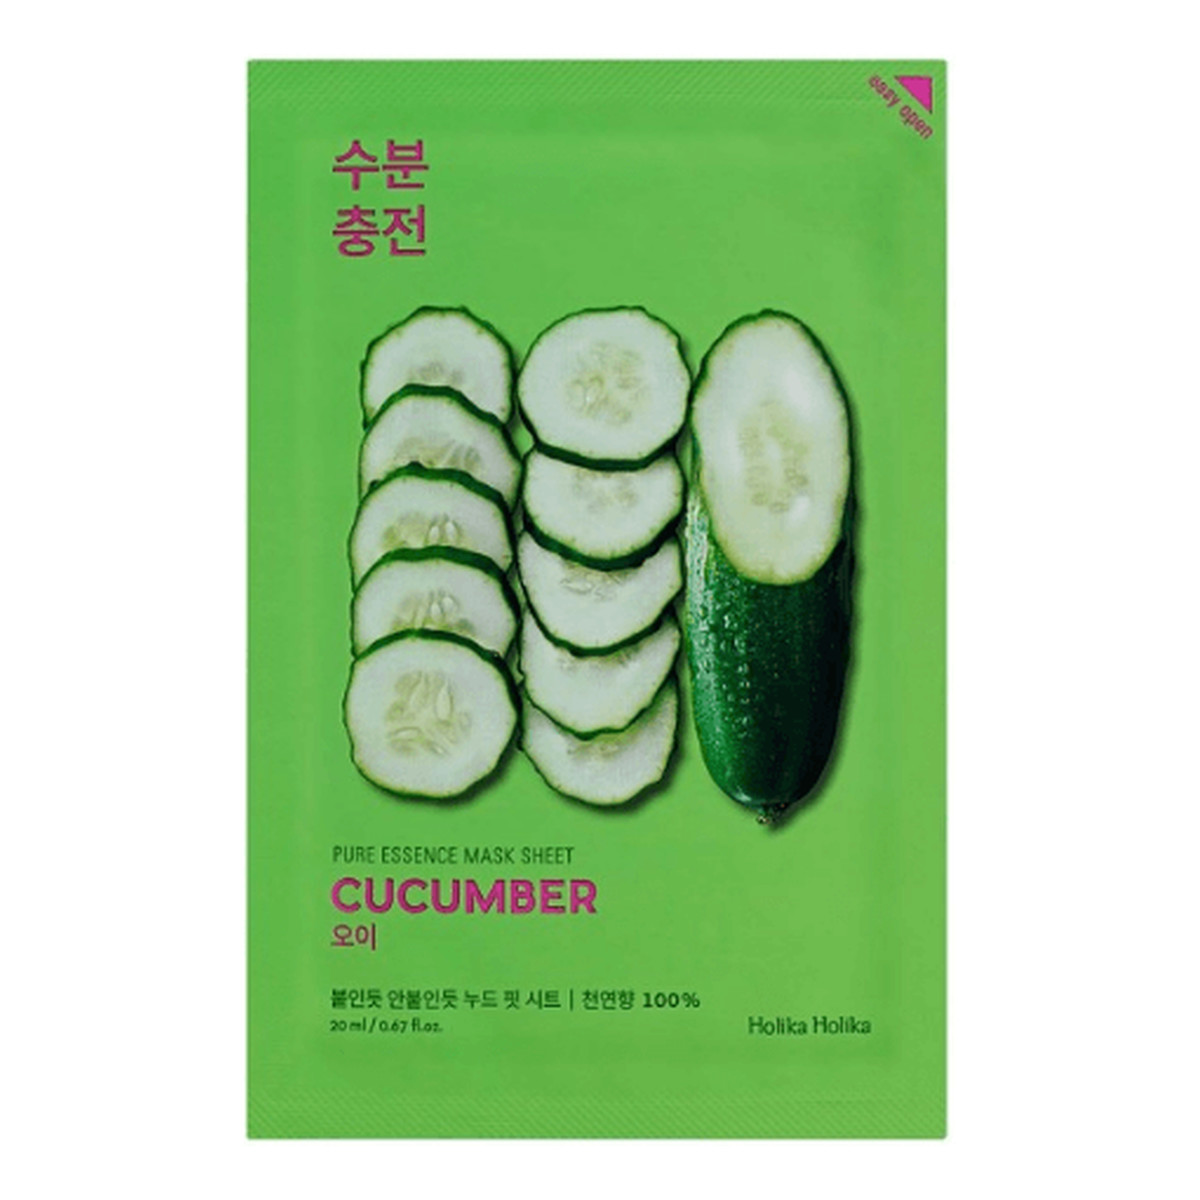 Holika Holika Pure Essence Mask Sheet Cucumber maseczka z ekstraktem z ogórka Odświeżająca1 sztuka 20ml